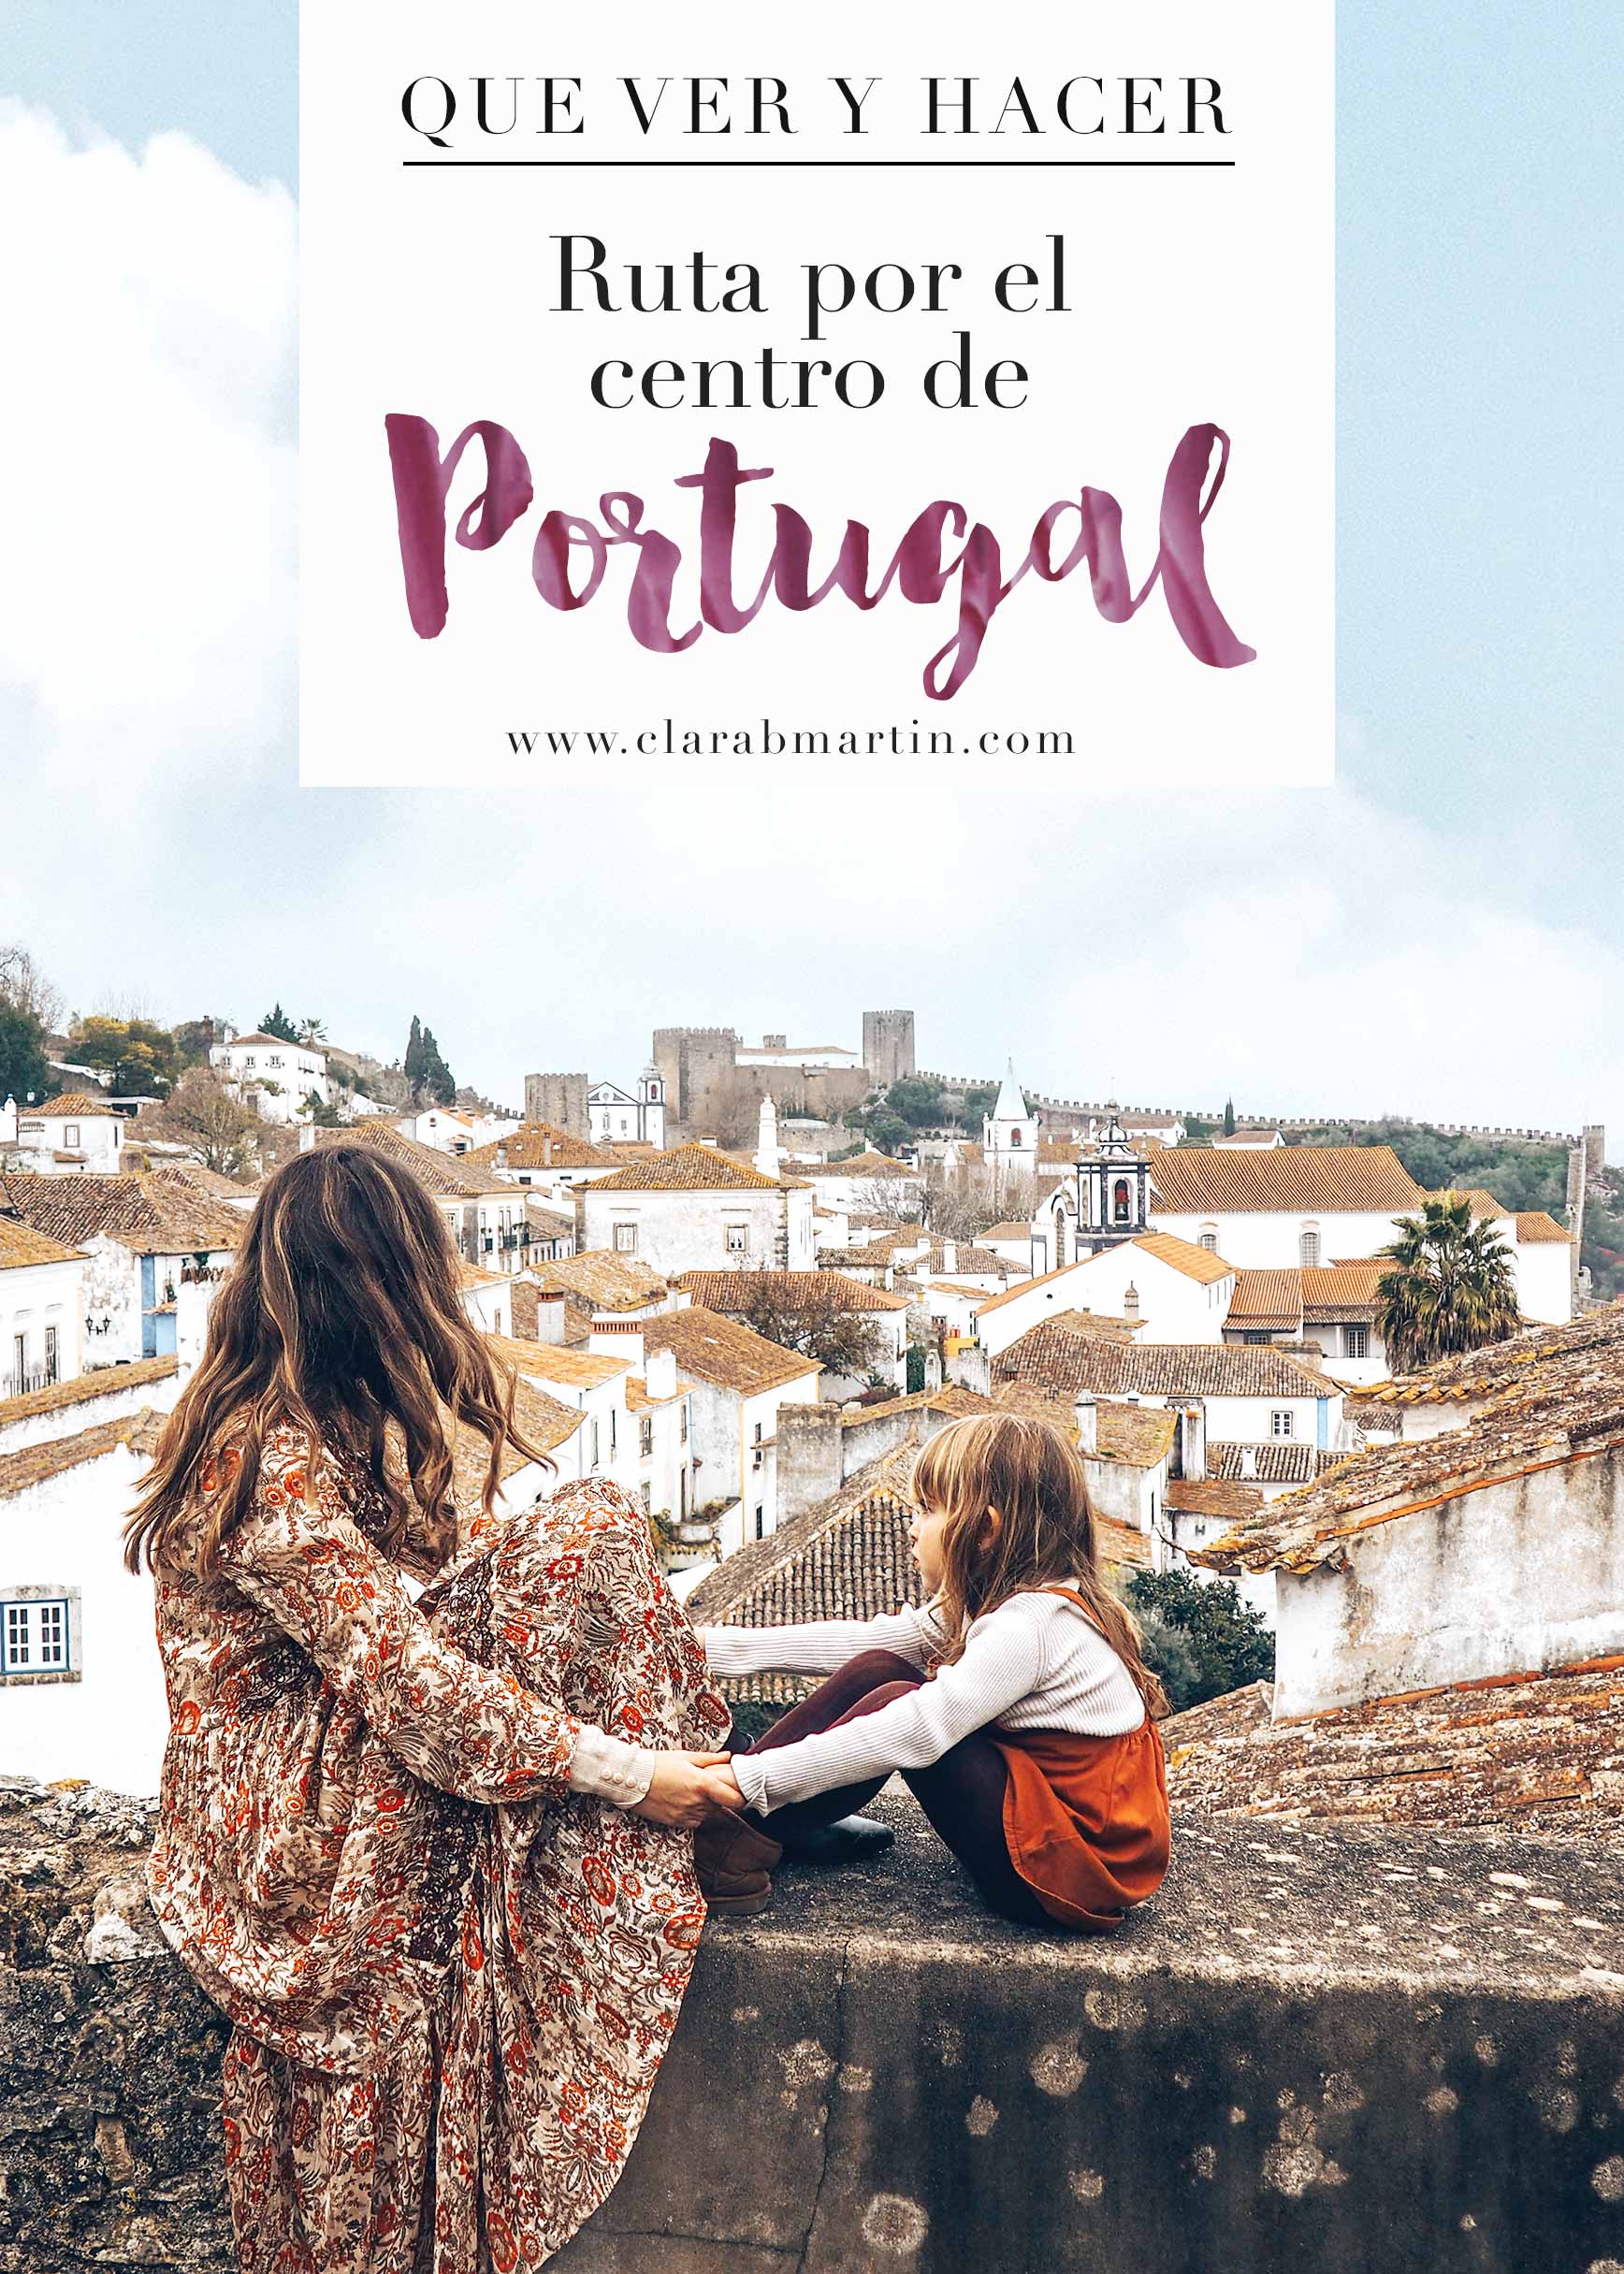 Ruta por el centro de Portugal